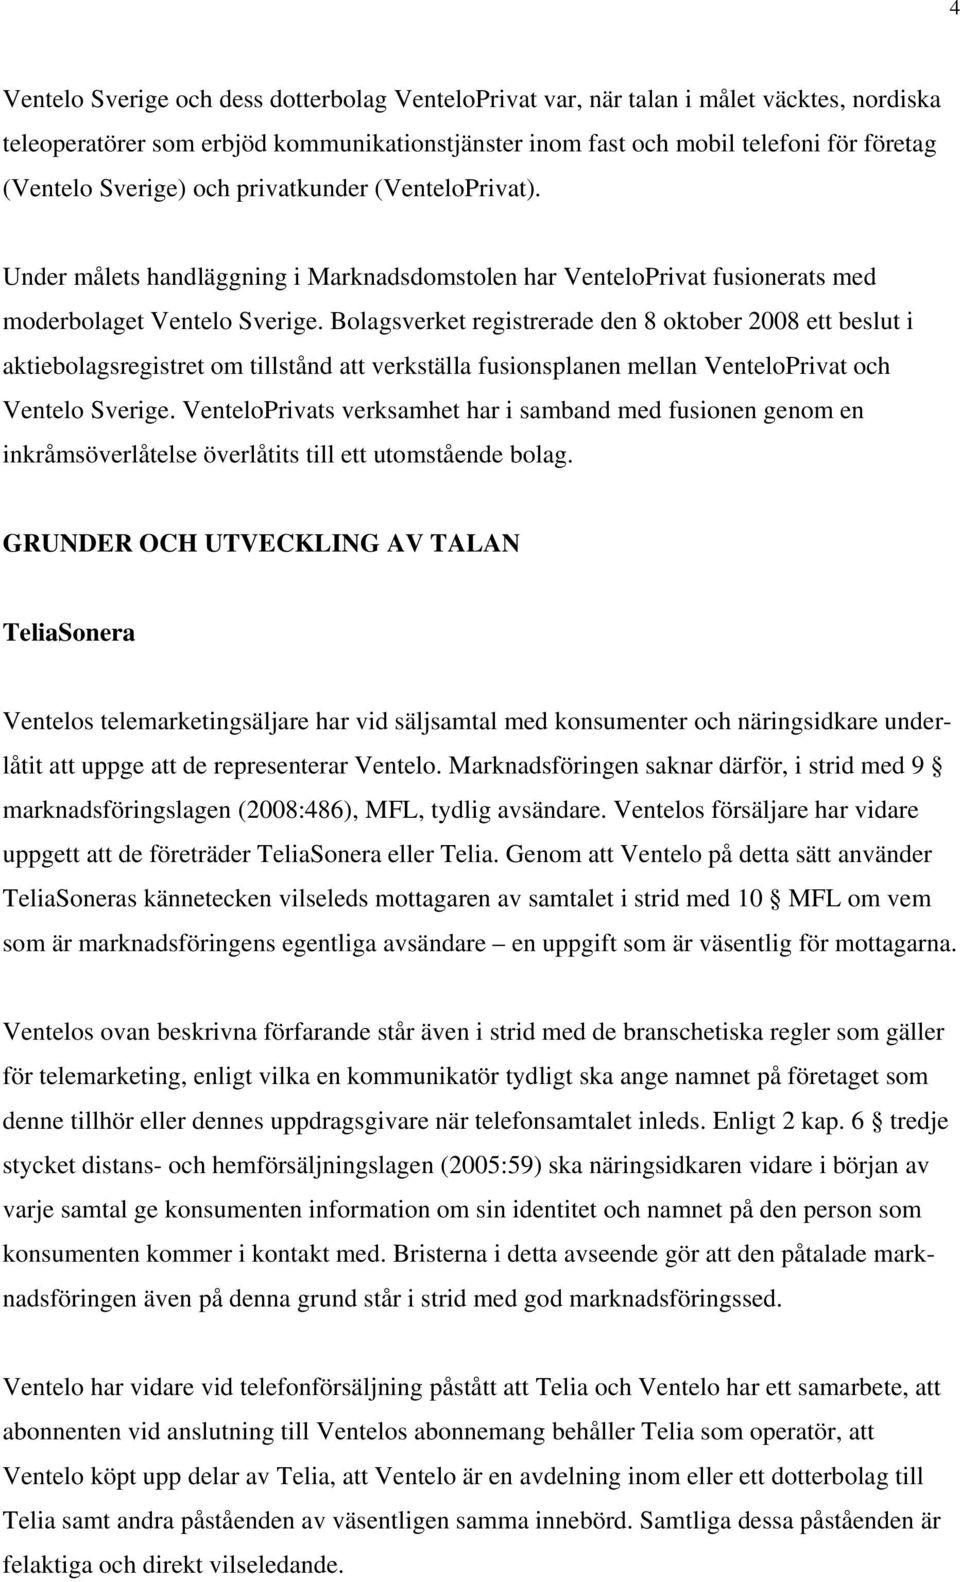 Bolagsverket registrerade den 8 oktober 2008 ett beslut i aktiebolagsregistret om tillstånd att verkställa fusionsplanen mellan VenteloPrivat och Ventelo Sverige.